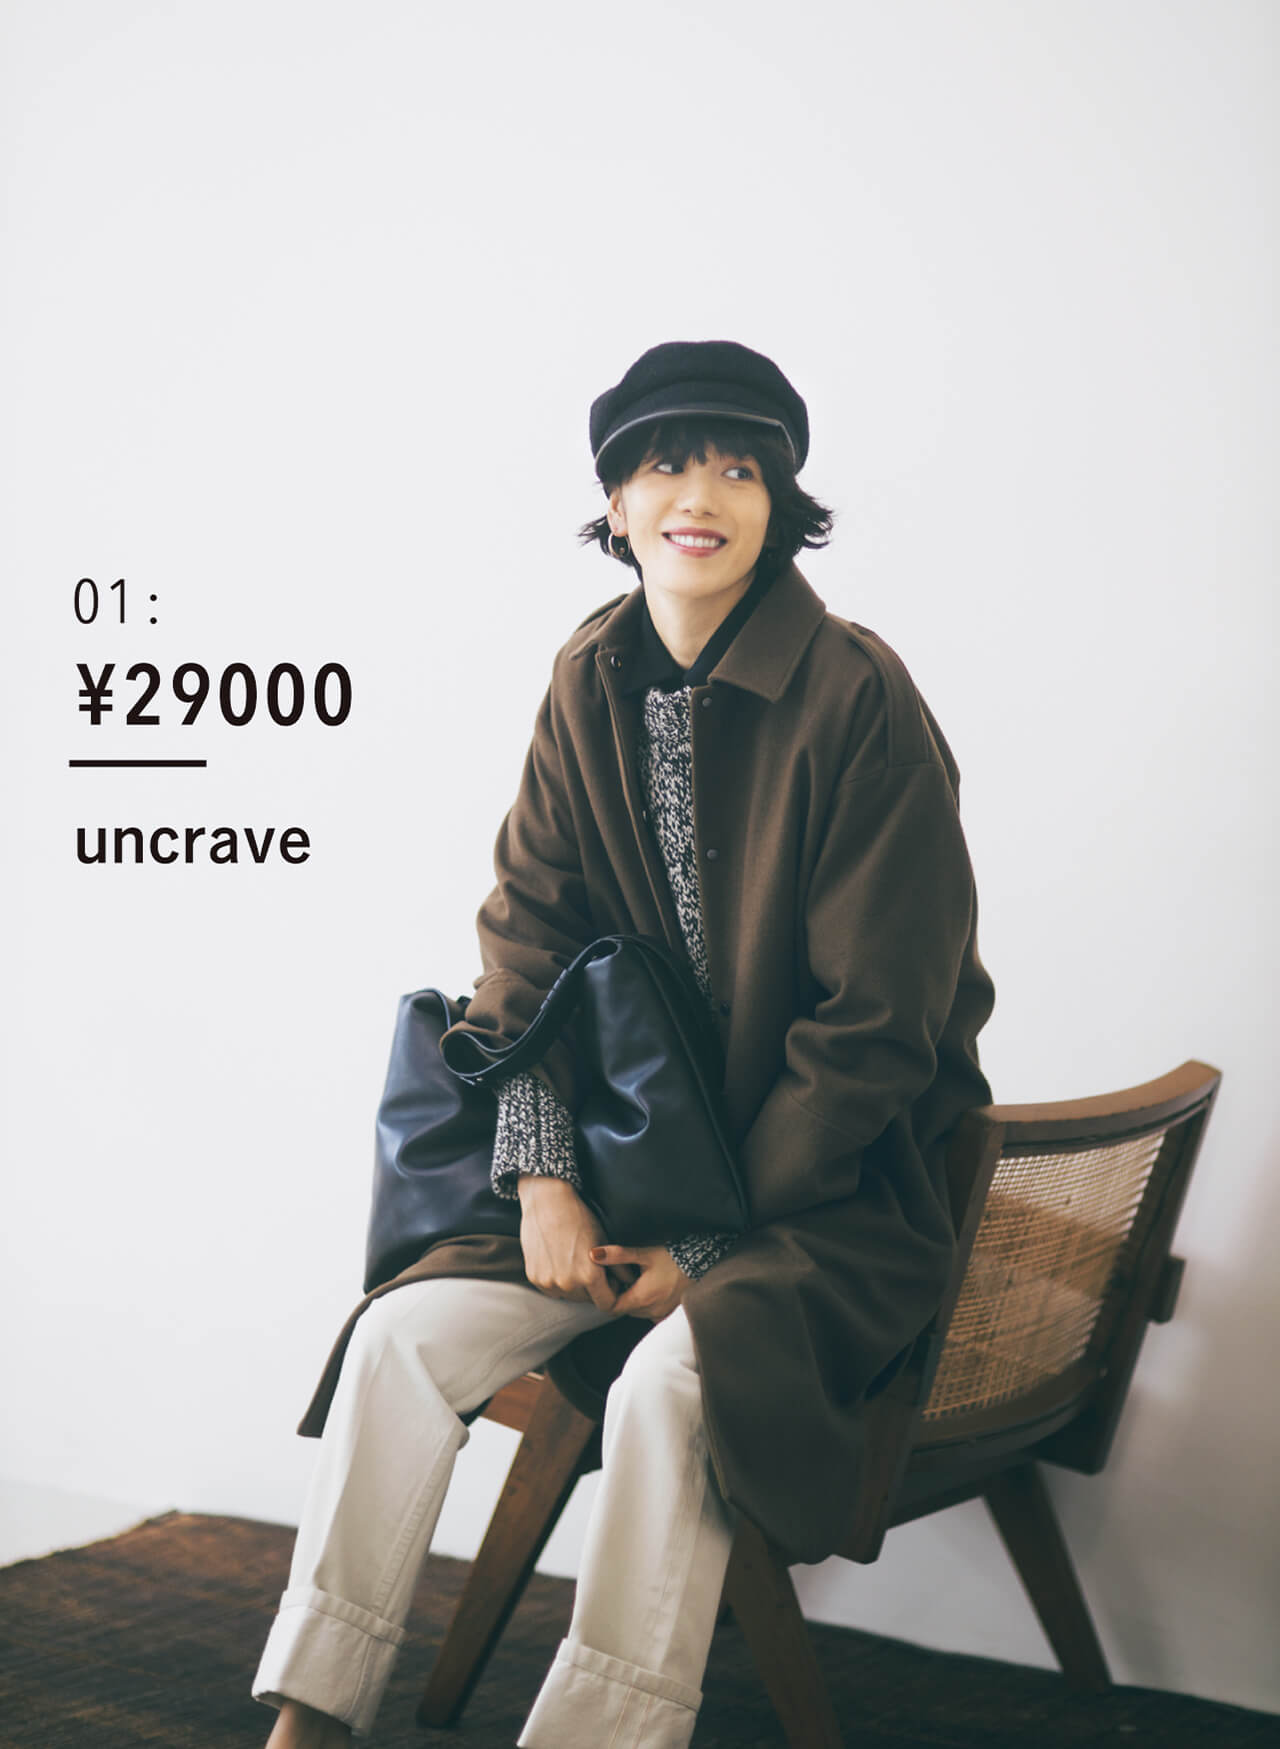 01 : ¥29000 uncrave